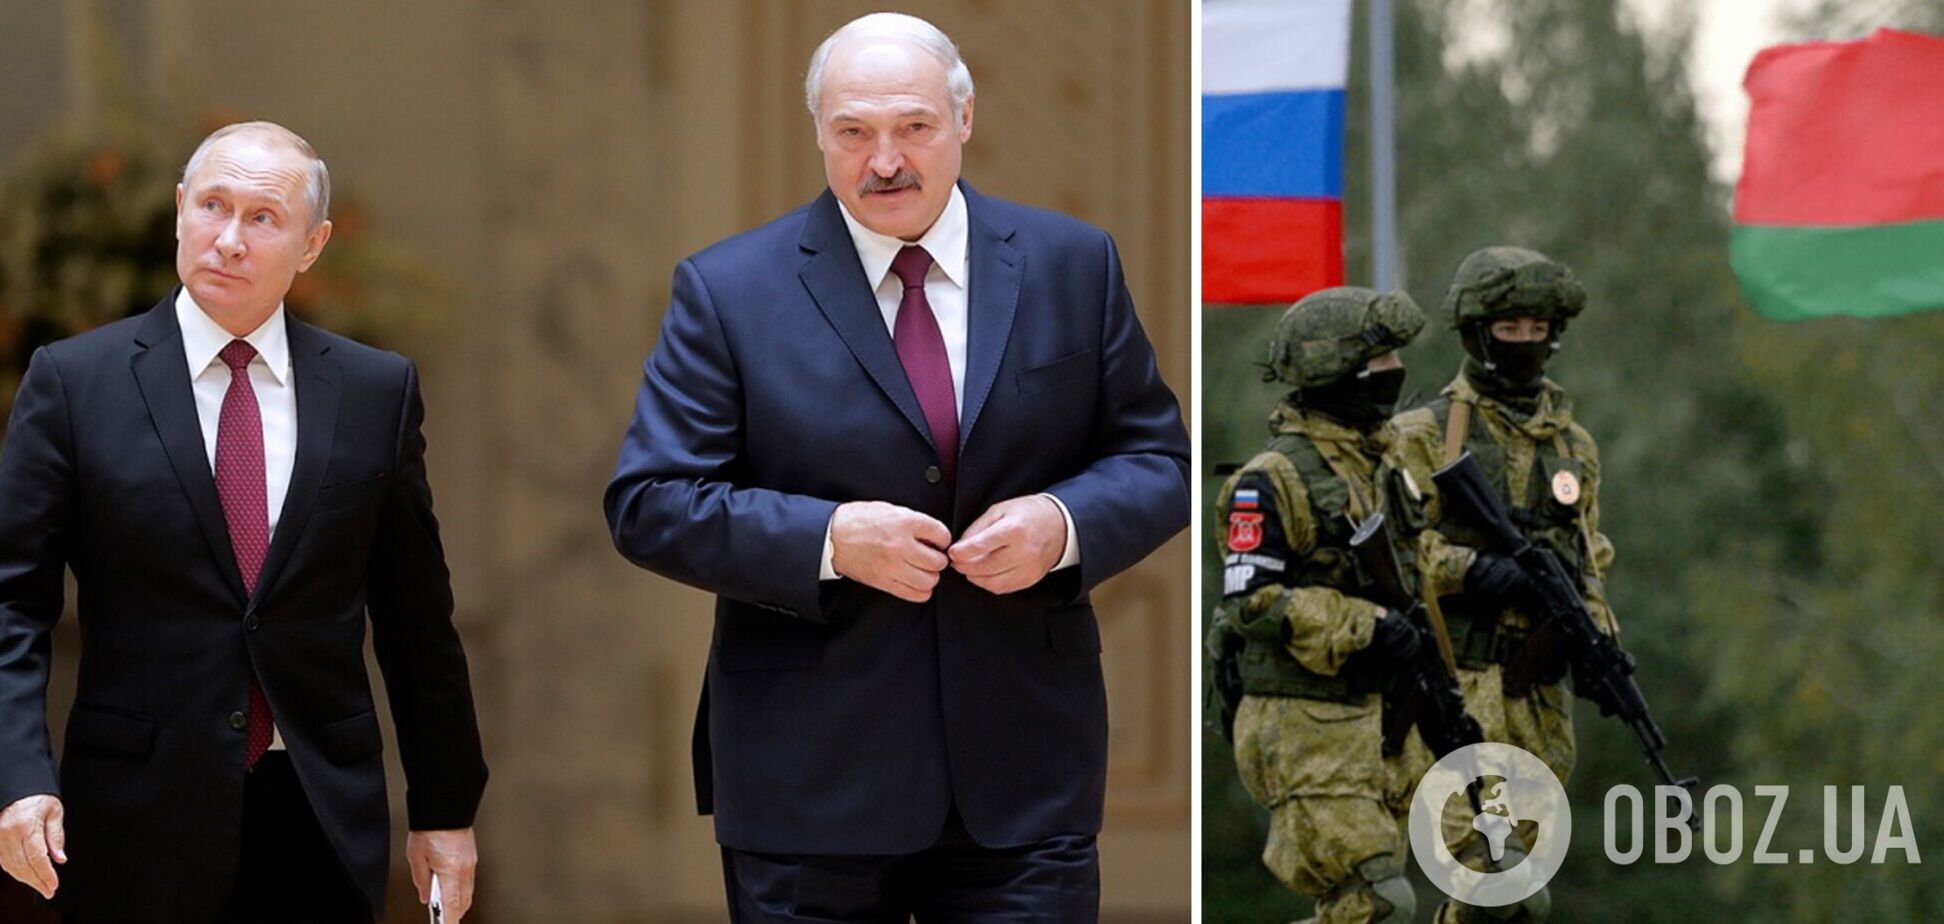 У Білорусі все готово до мобілізації, Лукашенку залишилося віддати наказ: опозиціонер попередив про загрозу